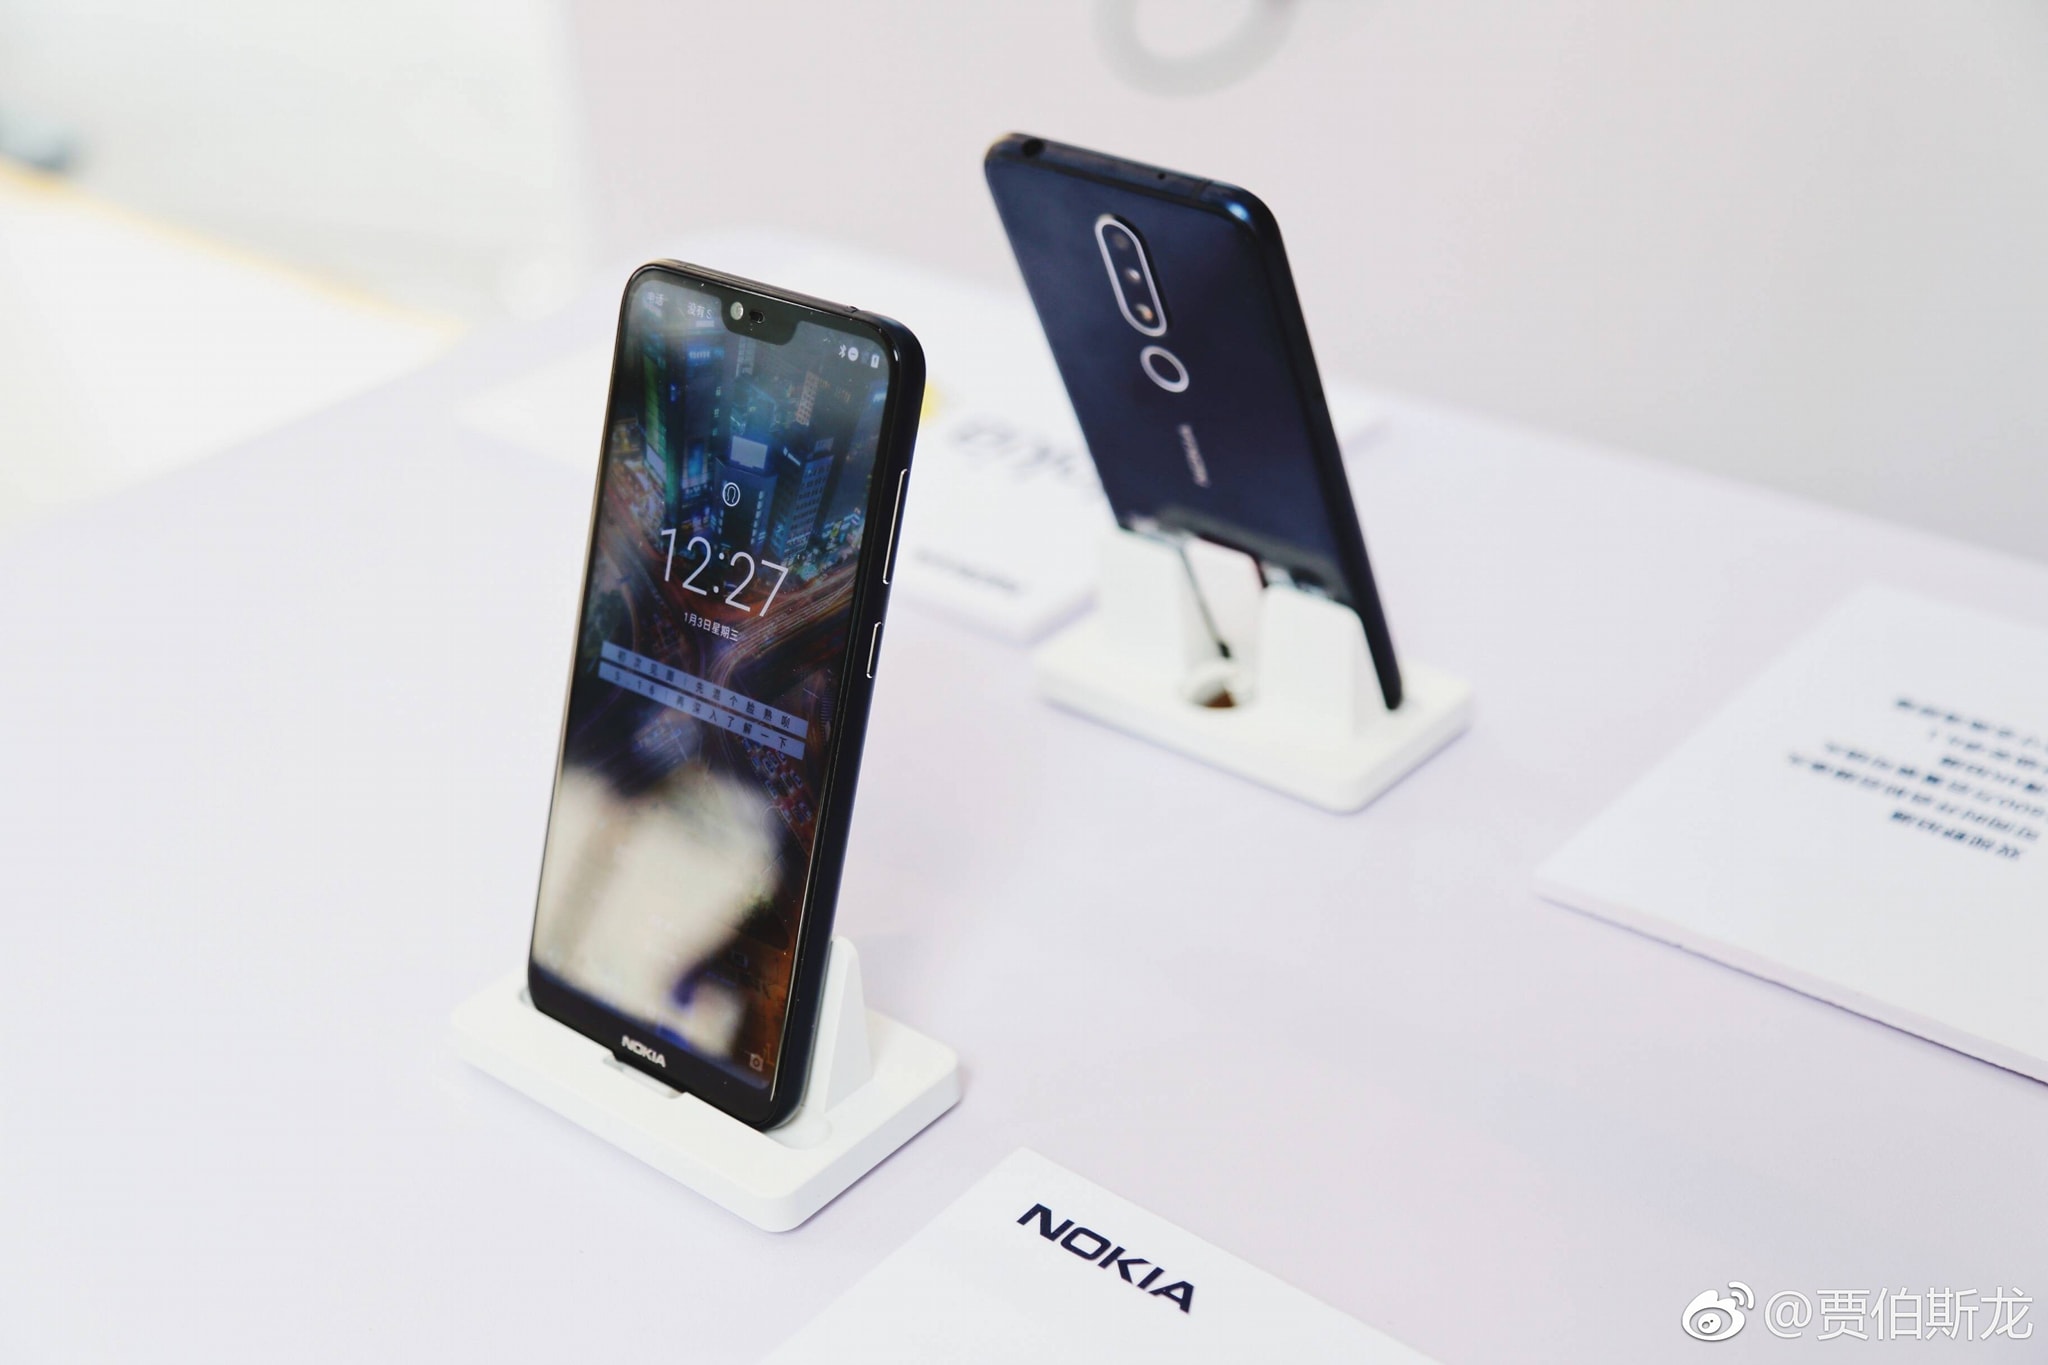 SD636 處理器、AI 美顏、景深雙攝：Nokia X6 被蘇寧商城提前發布；售價規格全曝光！ 10